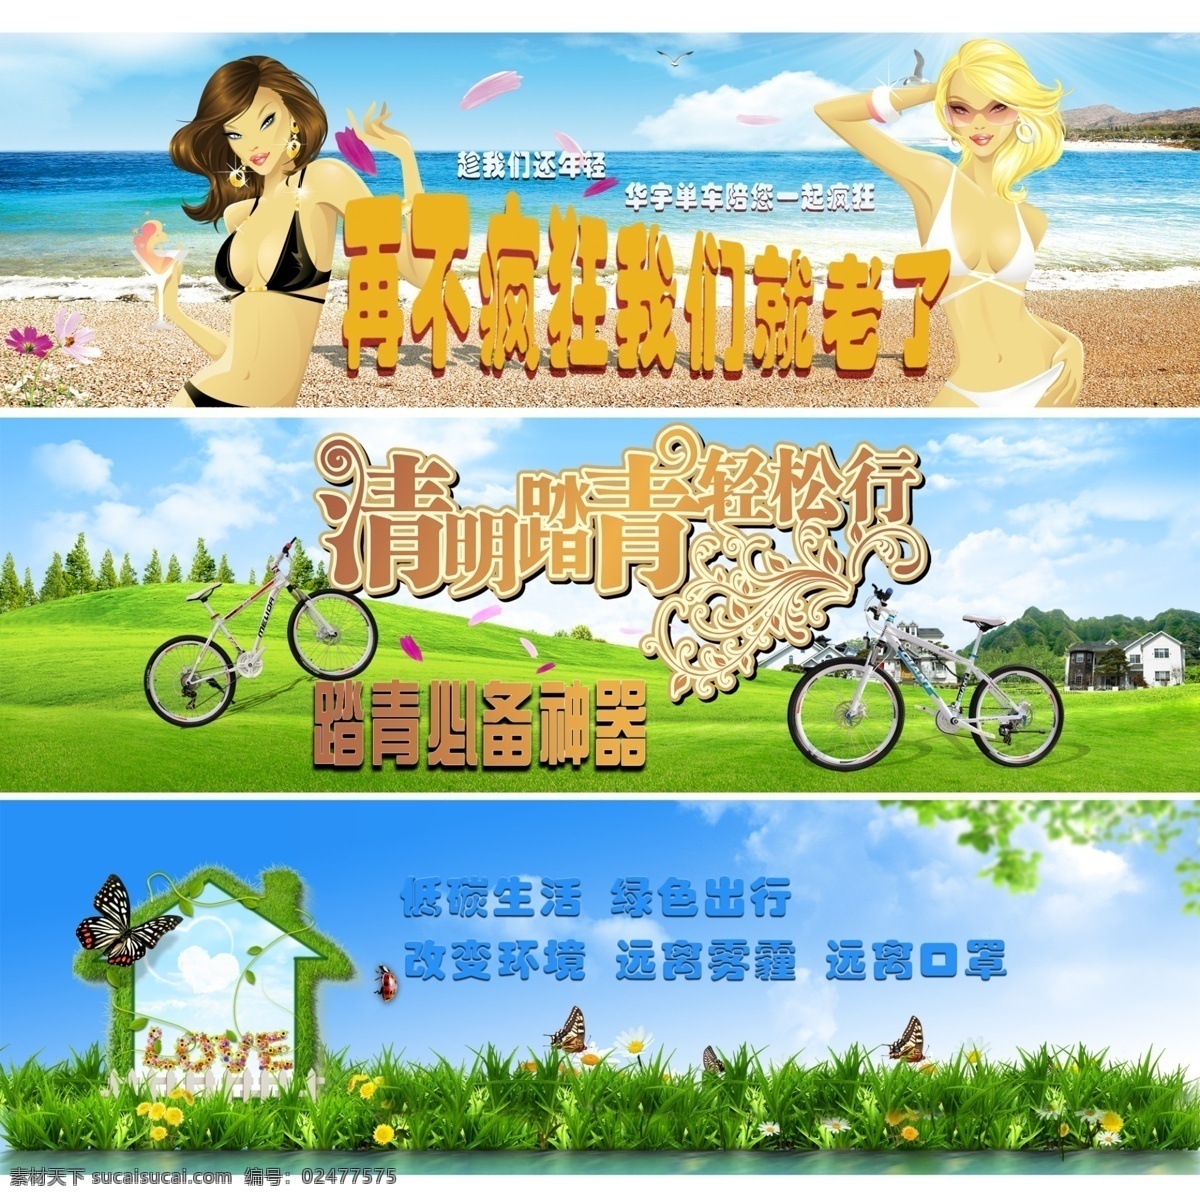 环保 自行车 广告 模版下载 淘宝广告 环保广告 夏天 春天 淘宝界面设计 源文件